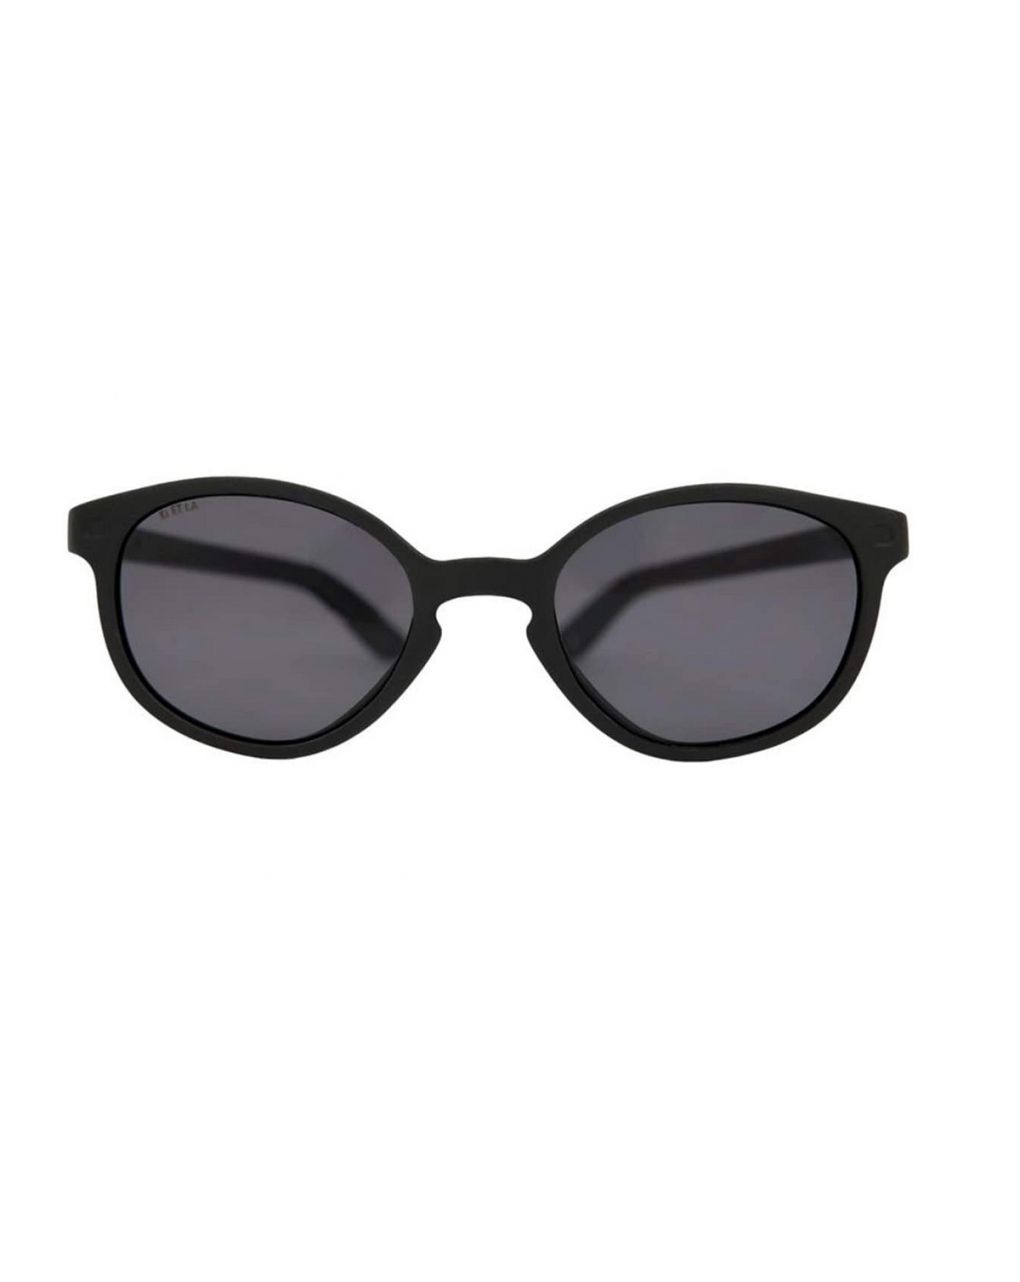 Kietla γυαλιά ηλίου wazz 1-2 ετών black - kietla